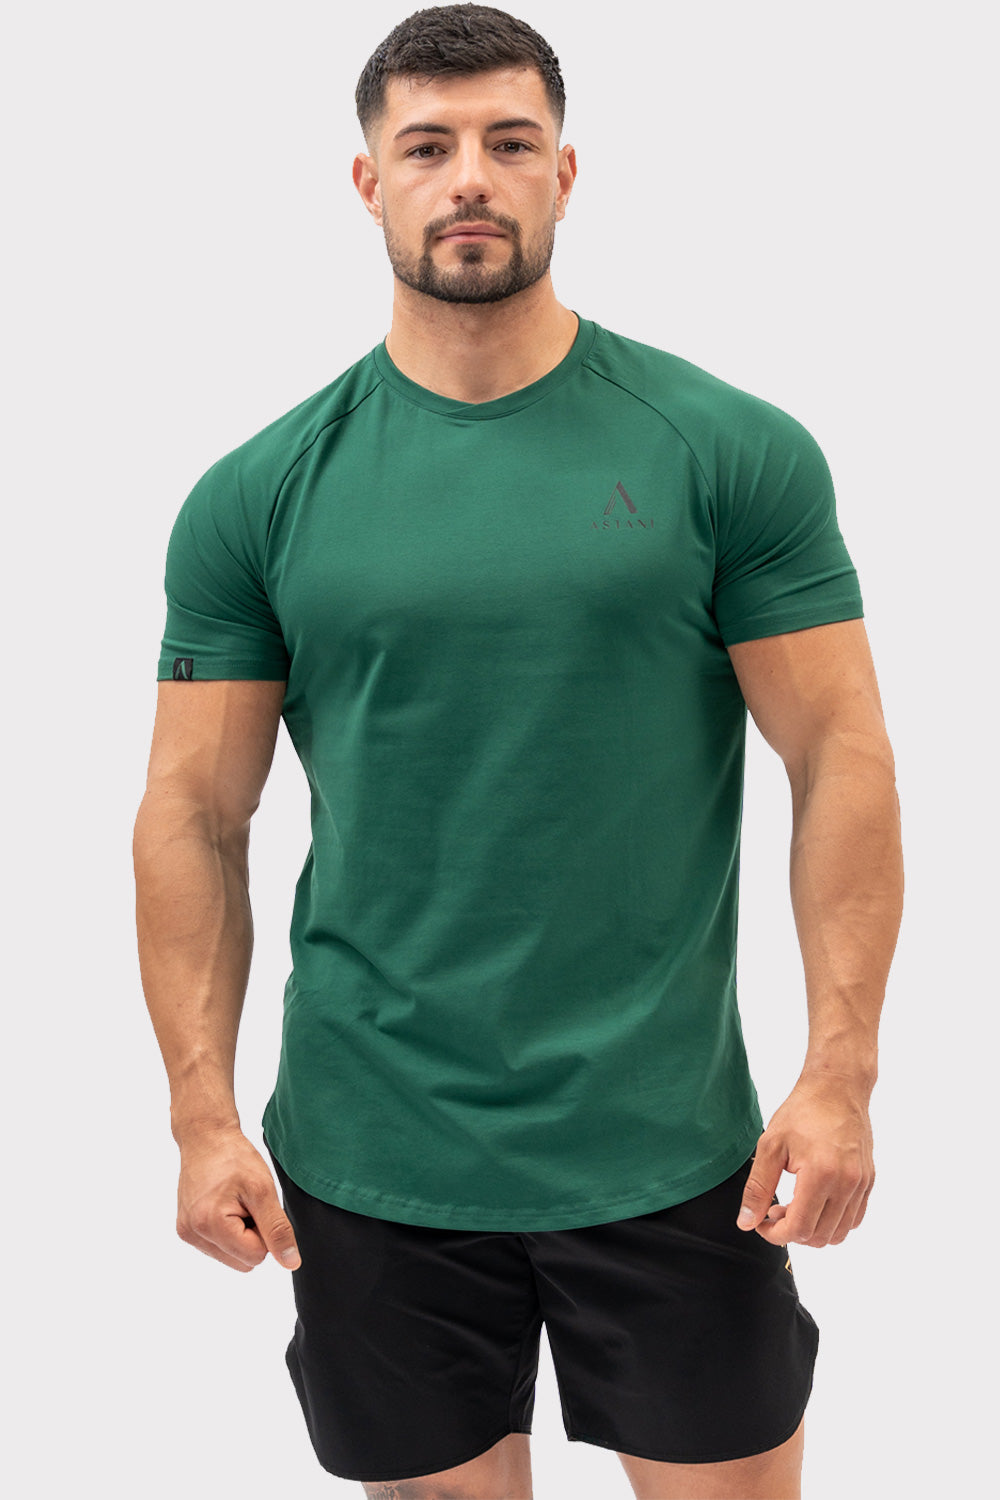 A CODE T-Shirt - sötétzöld